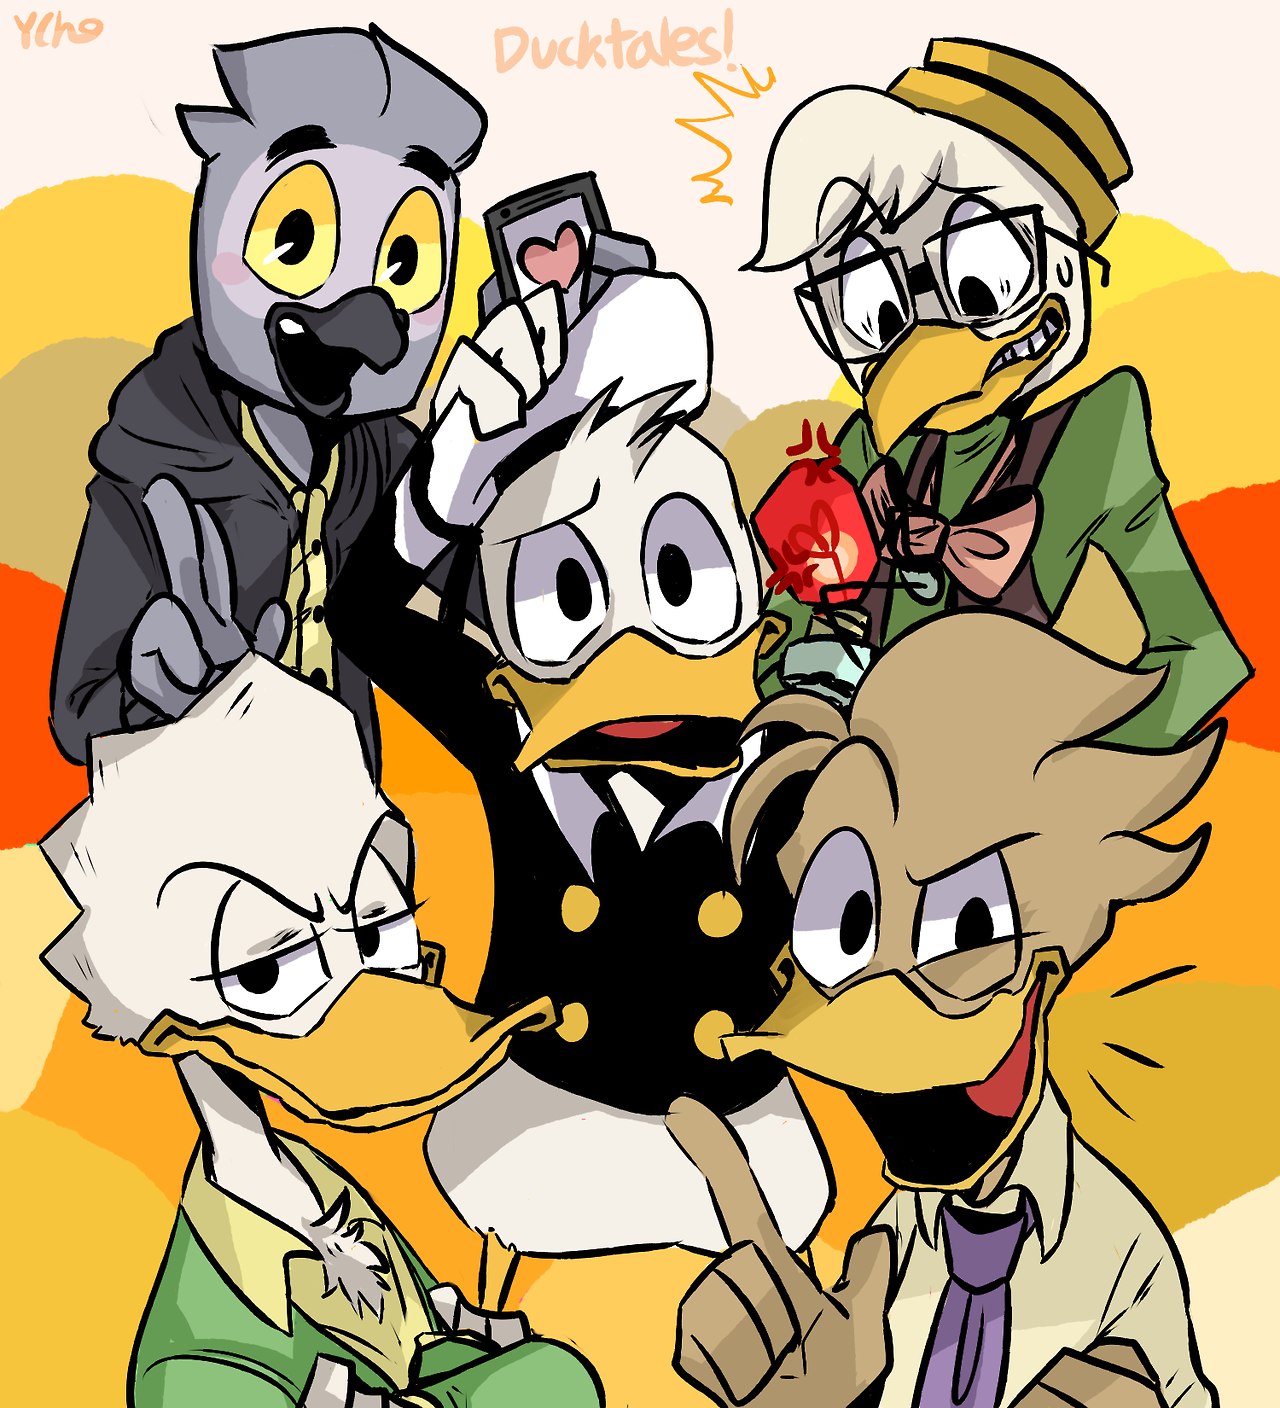 New Ducktales clip.